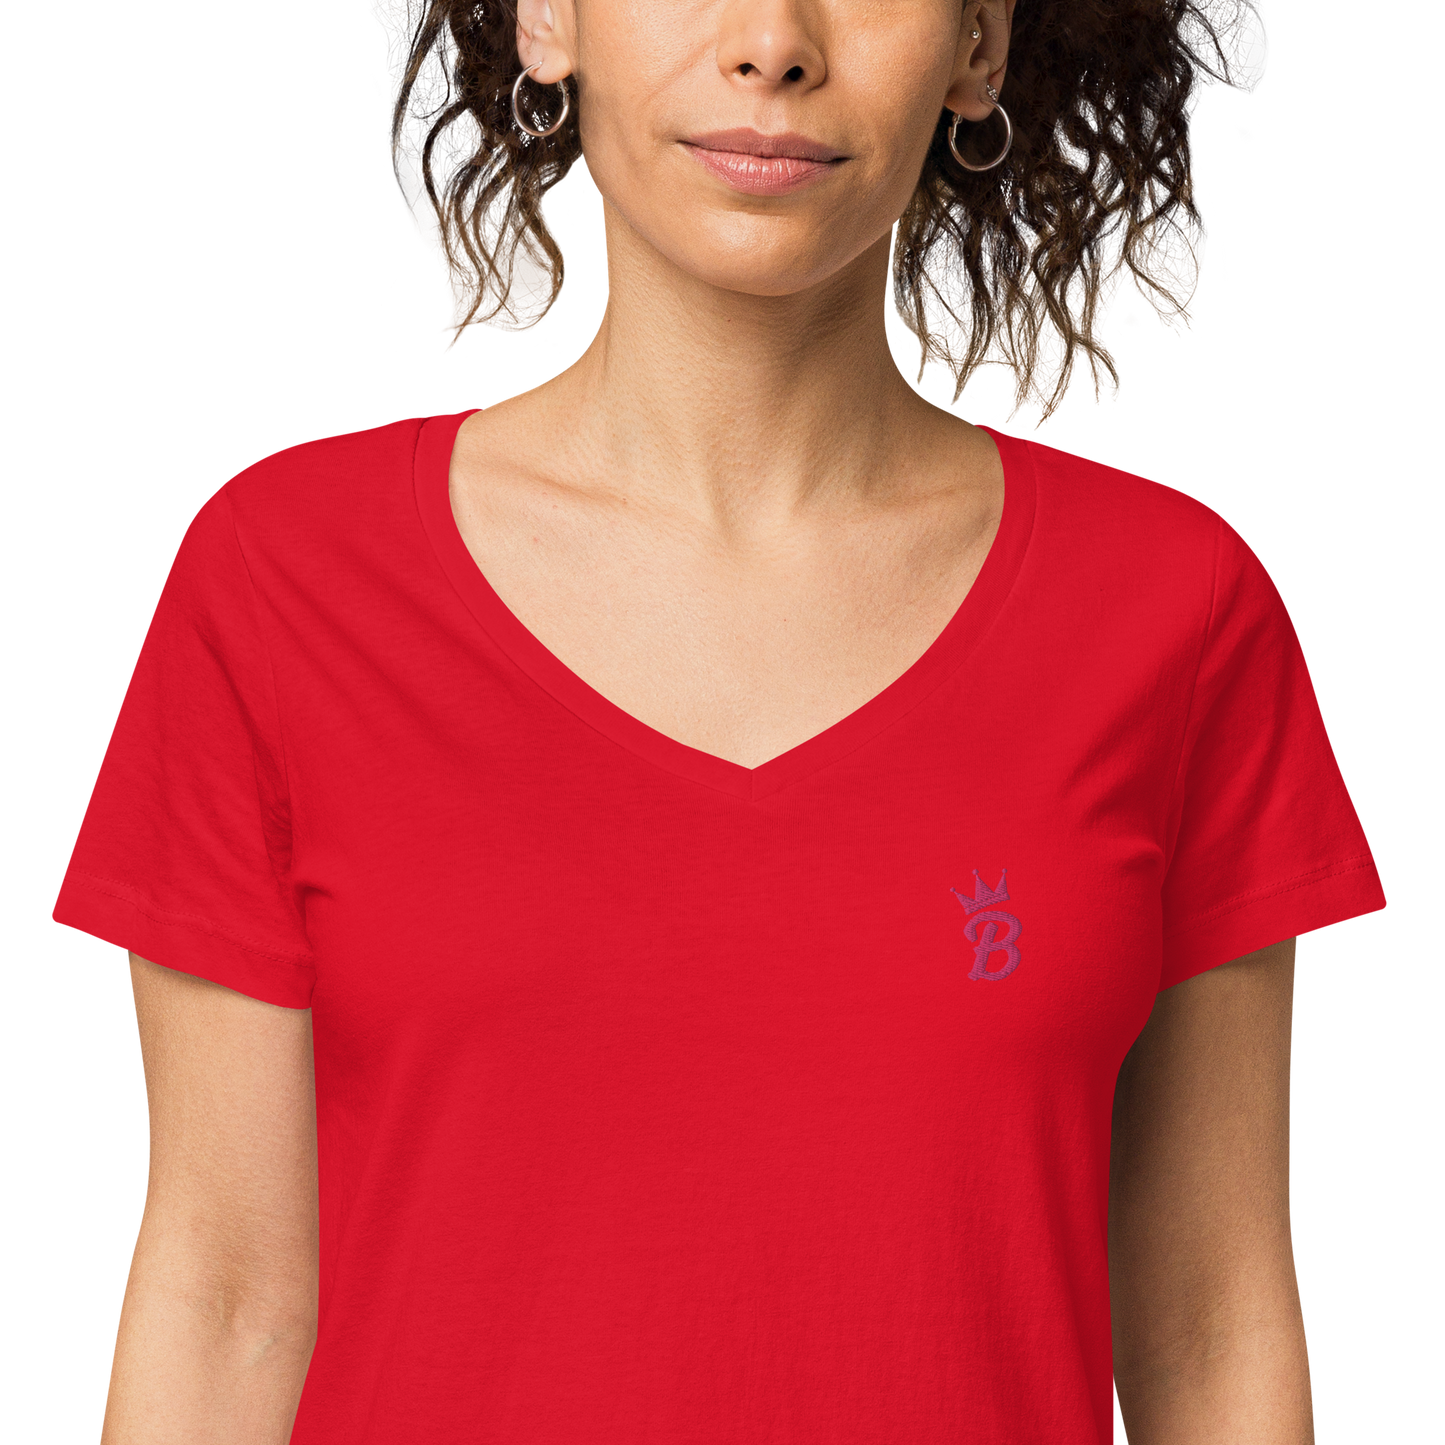 Bellaロゴ刺繍レディース フィット Vネック オーガニック Tシャツ